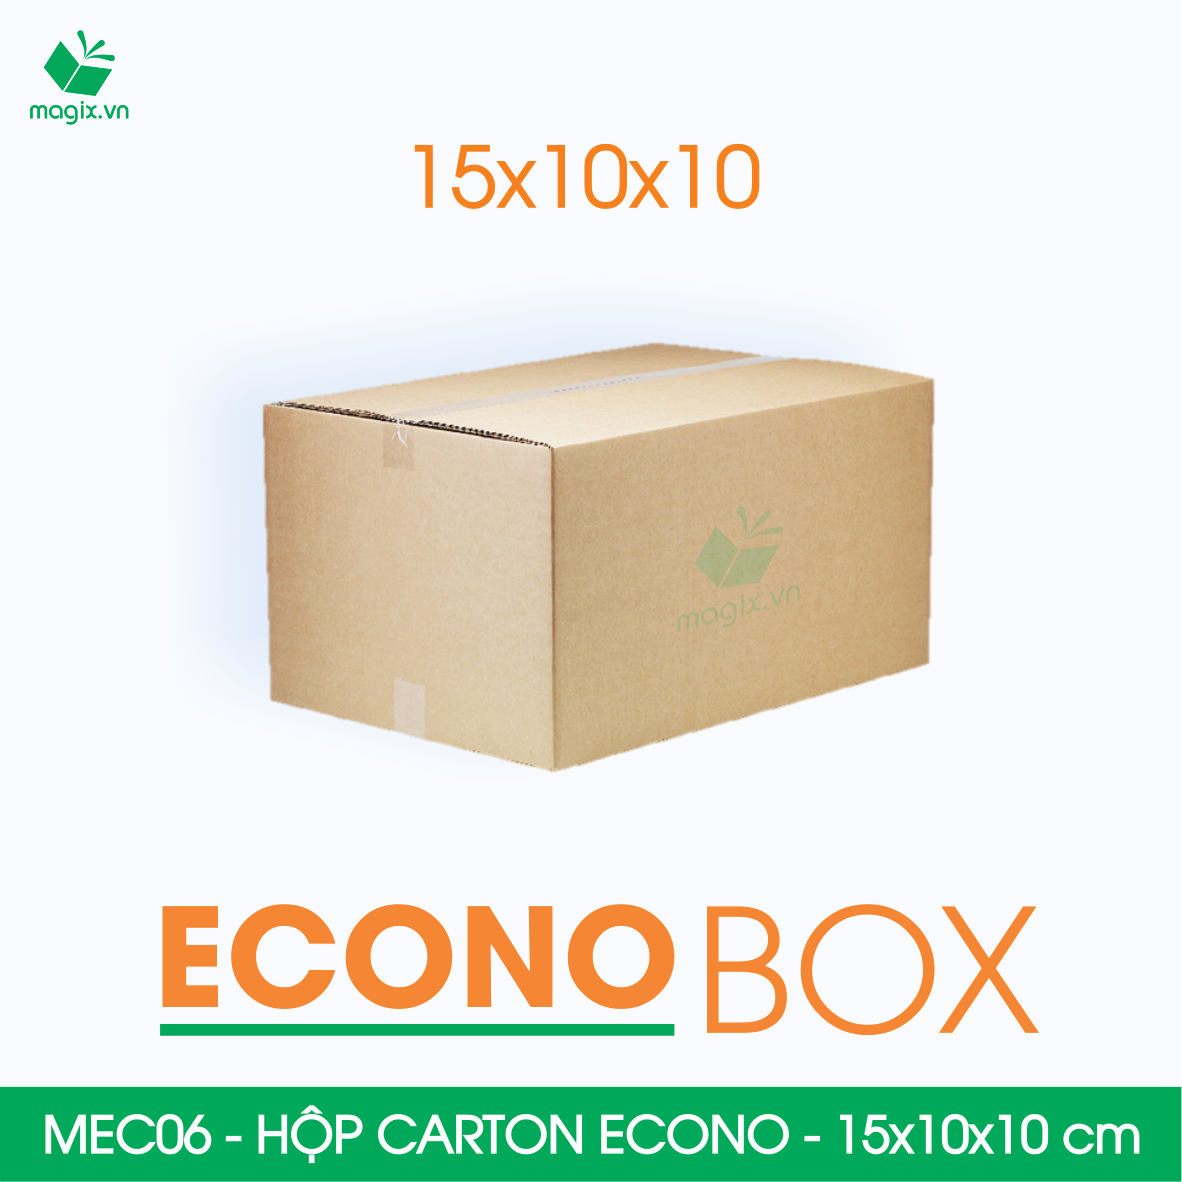 Hình ảnh MEC06 - 15x10x10 cm - Combo 60 thùng hộp carton trơn siêu tiết kiệm ECONO